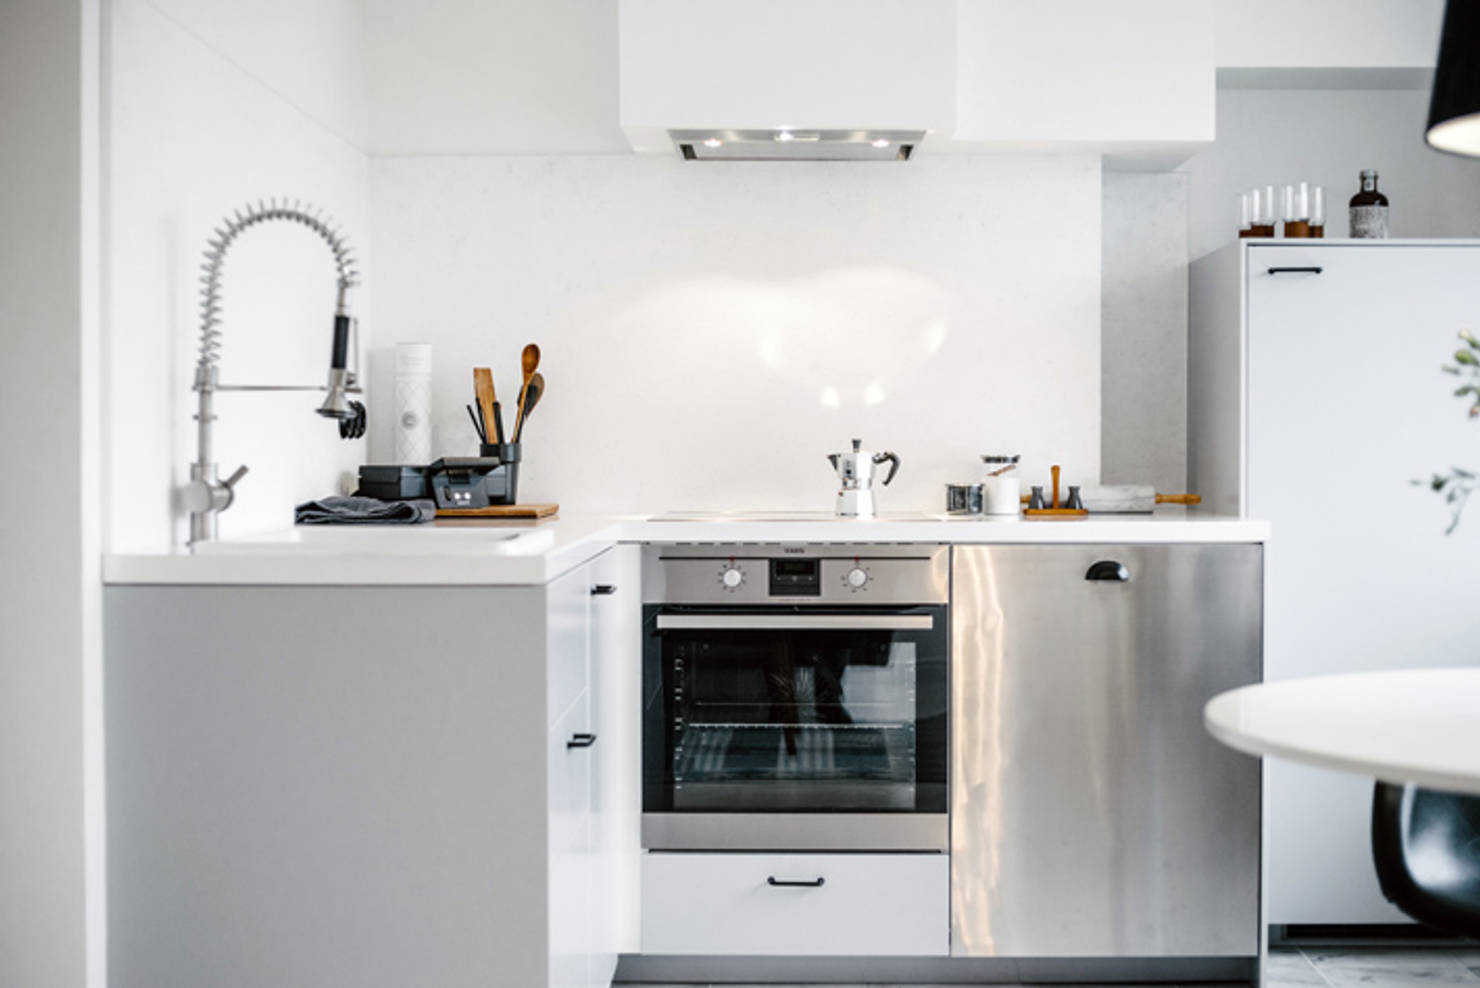 Küçük ama pratik mutfaklar: 10 örnek fotoğraf